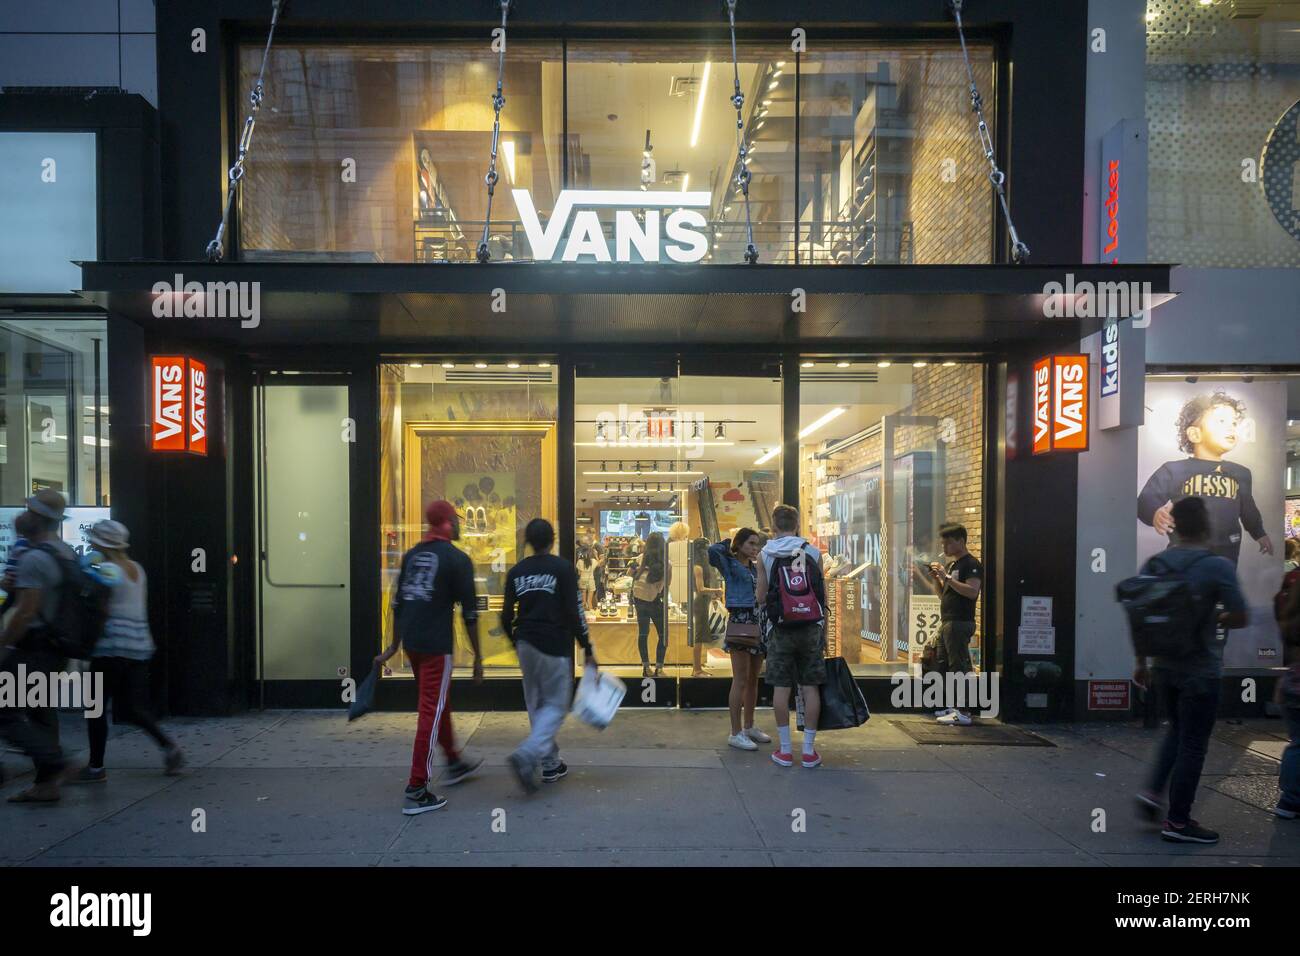 Un magasin de chaussures Vans à Herald Square, à New York, le mardi 21 août  2018. VF Corp., propriétaire de North face, Vans, Wrangler et d'autres  marques, a récemment annoncé qu'elle allait